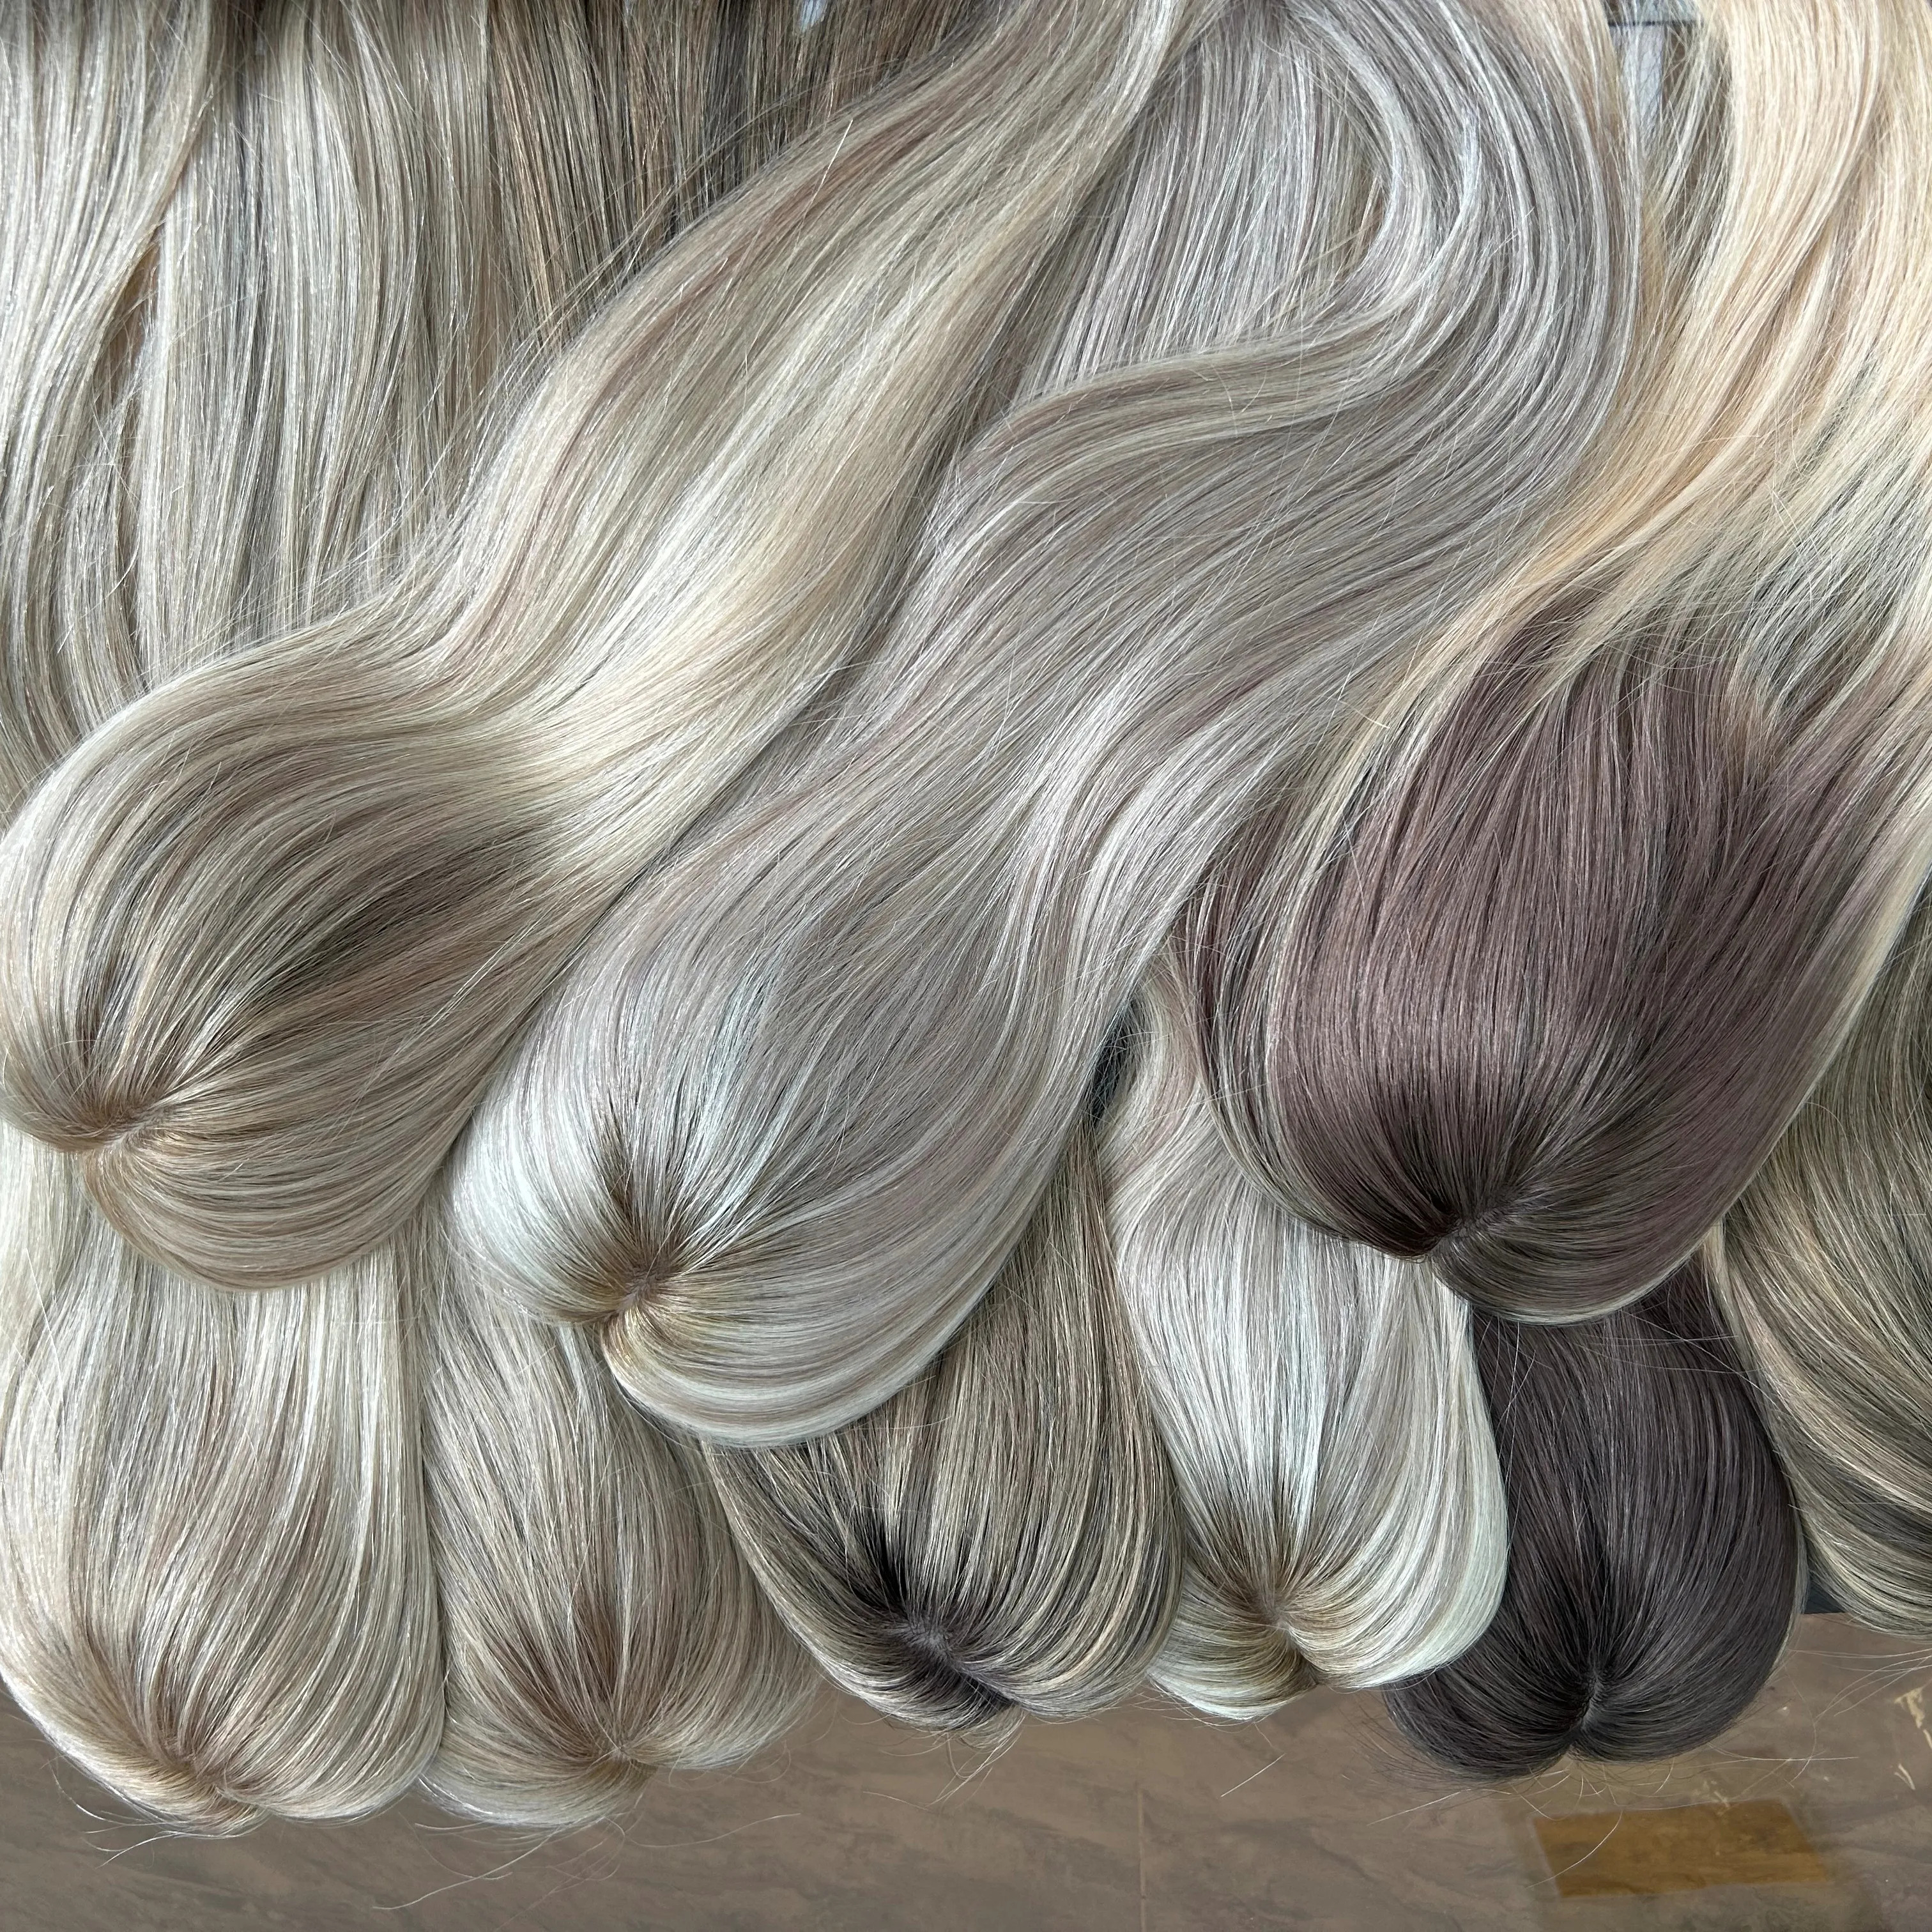 Haut en soie attaché à la main Topper de cheveux humains russes Balayage couleur Clip dans le toupet partie libre Base de soie Toppers de cheveux pour les femmes